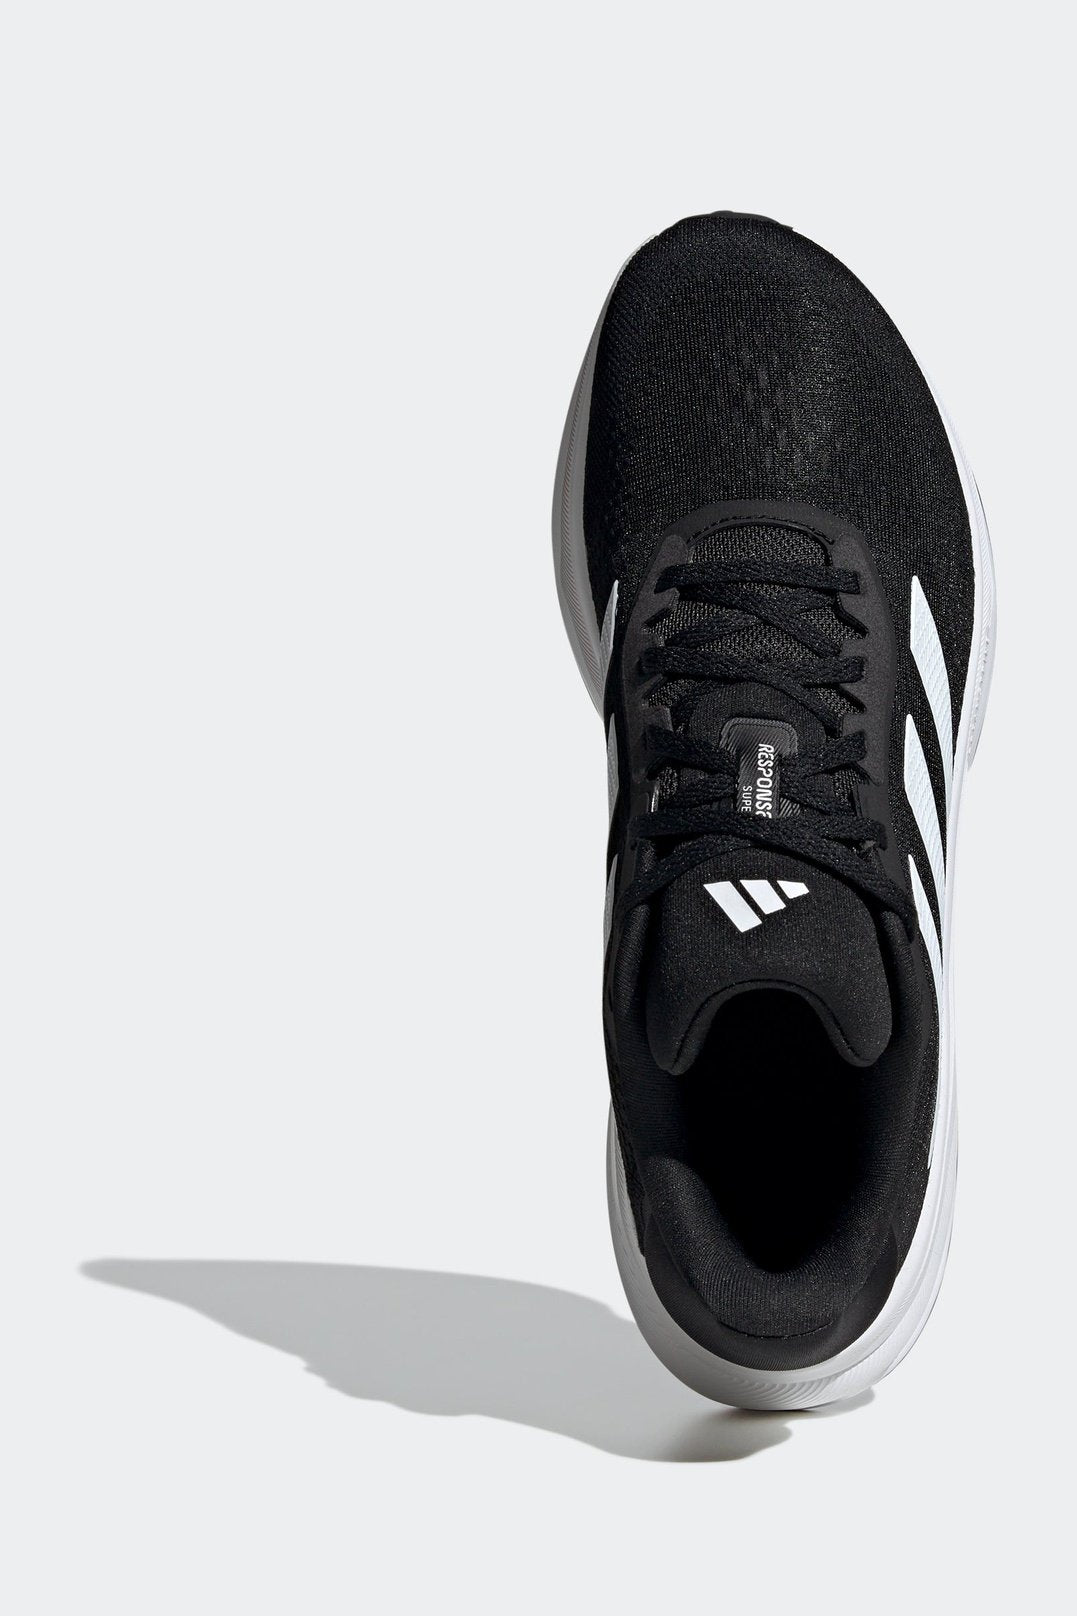 נעלי ספורט לגברים RESPONSE SUPER בצבע שחור ולבן